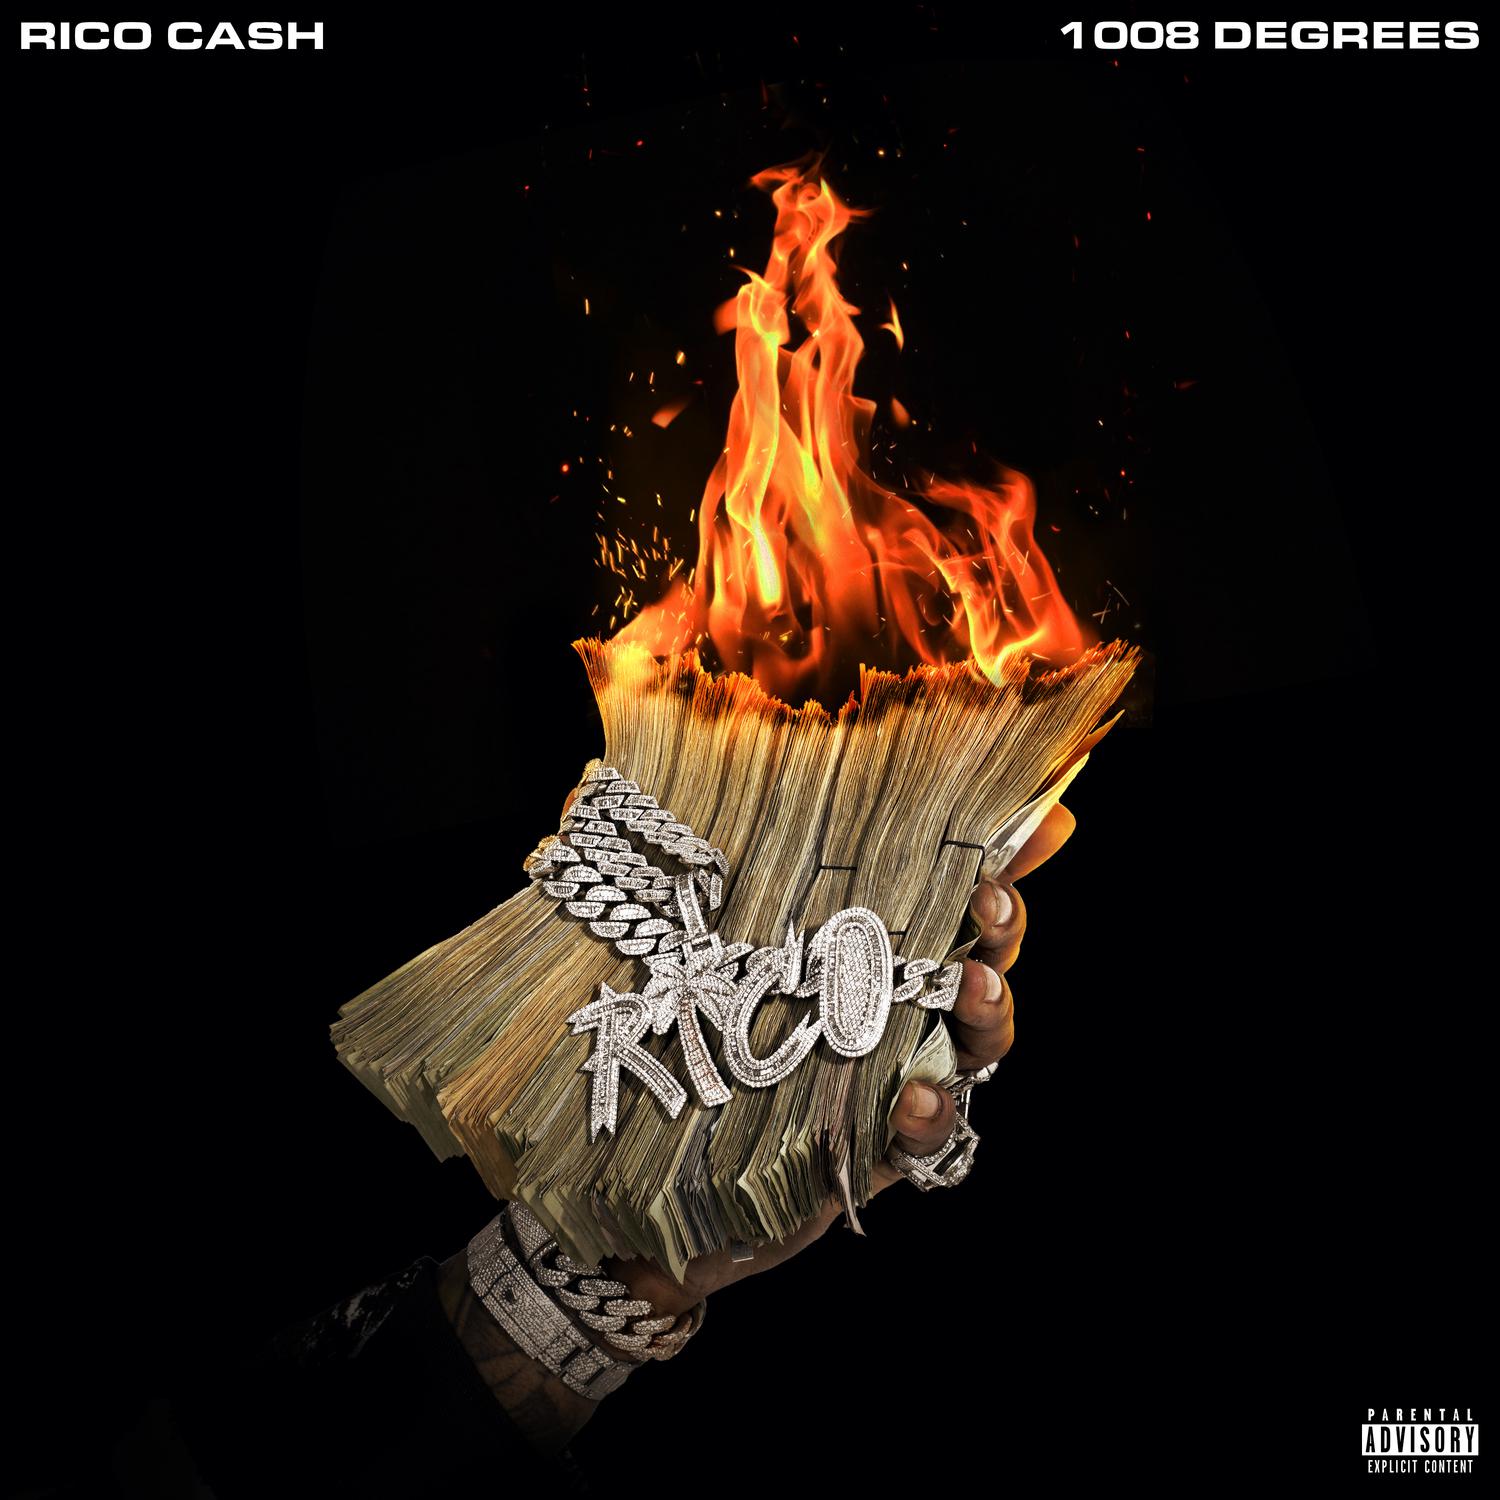 Rico Cash - Heart Cold (feat. Landstrip Chip)